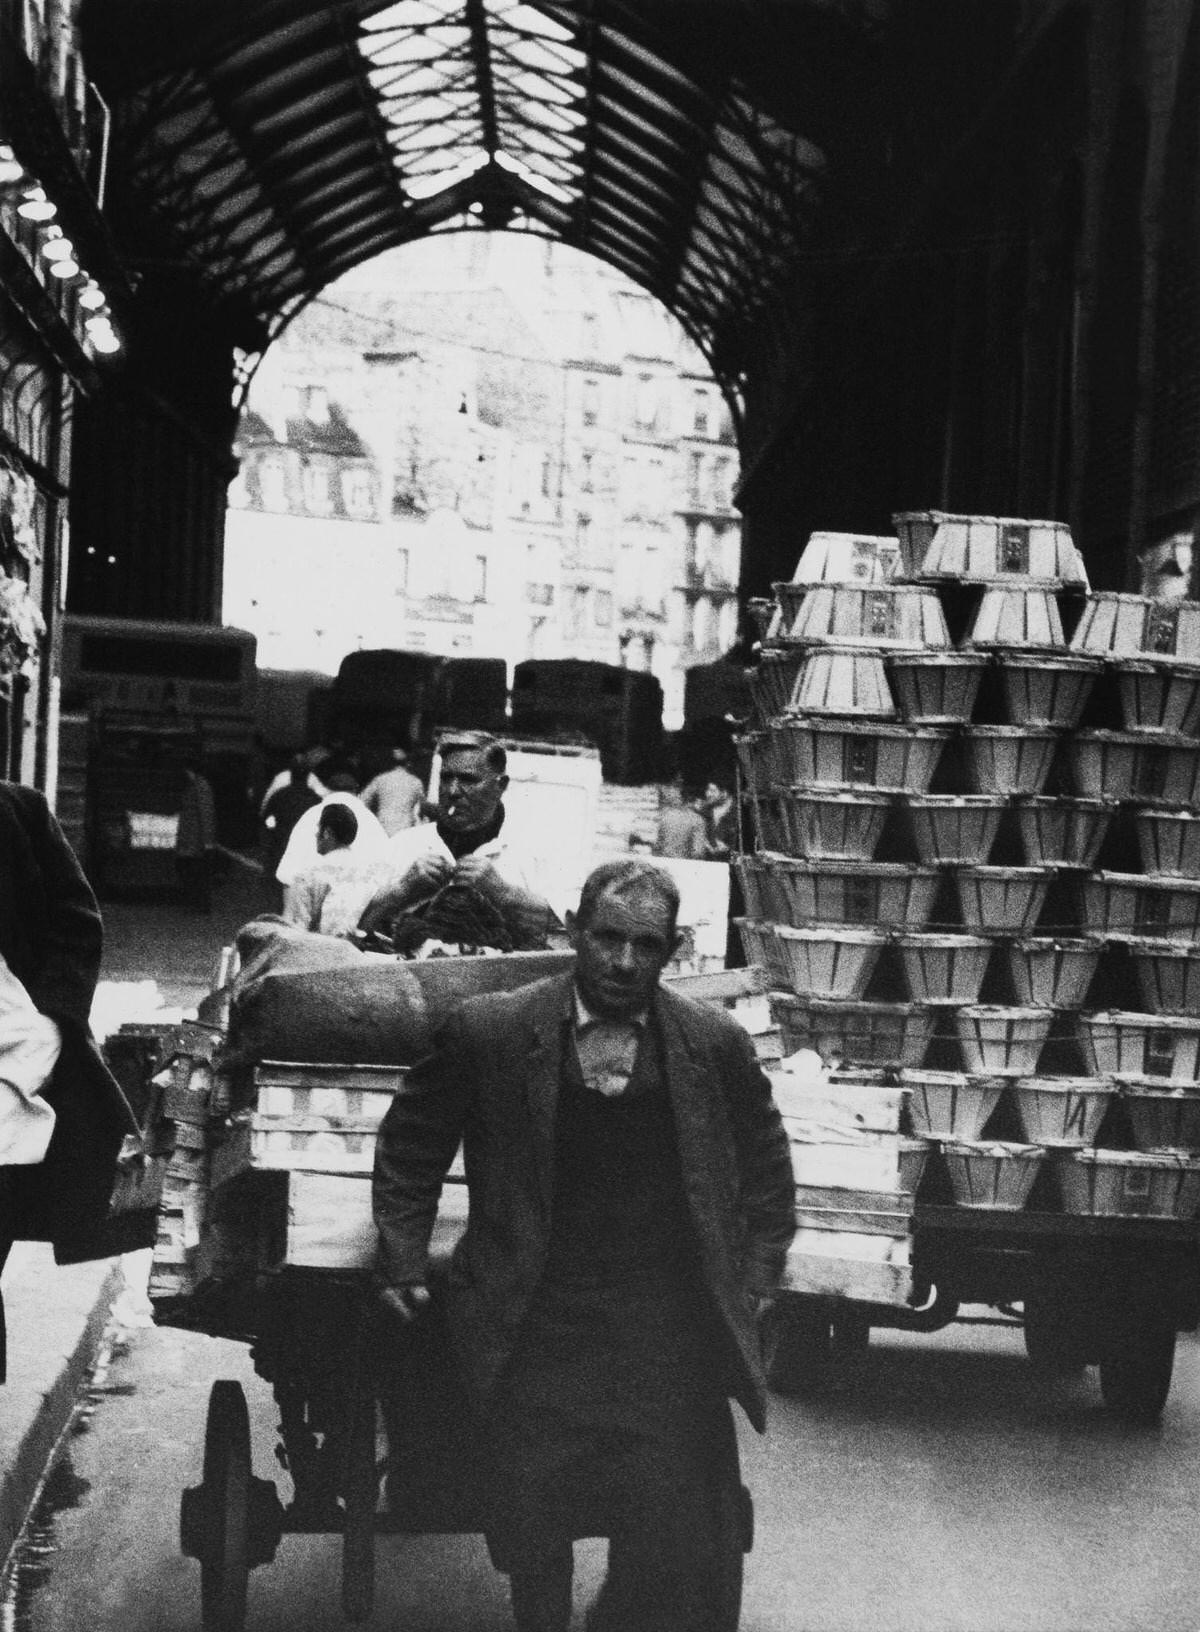 The Goods Arrival, Les Halles, 1960s